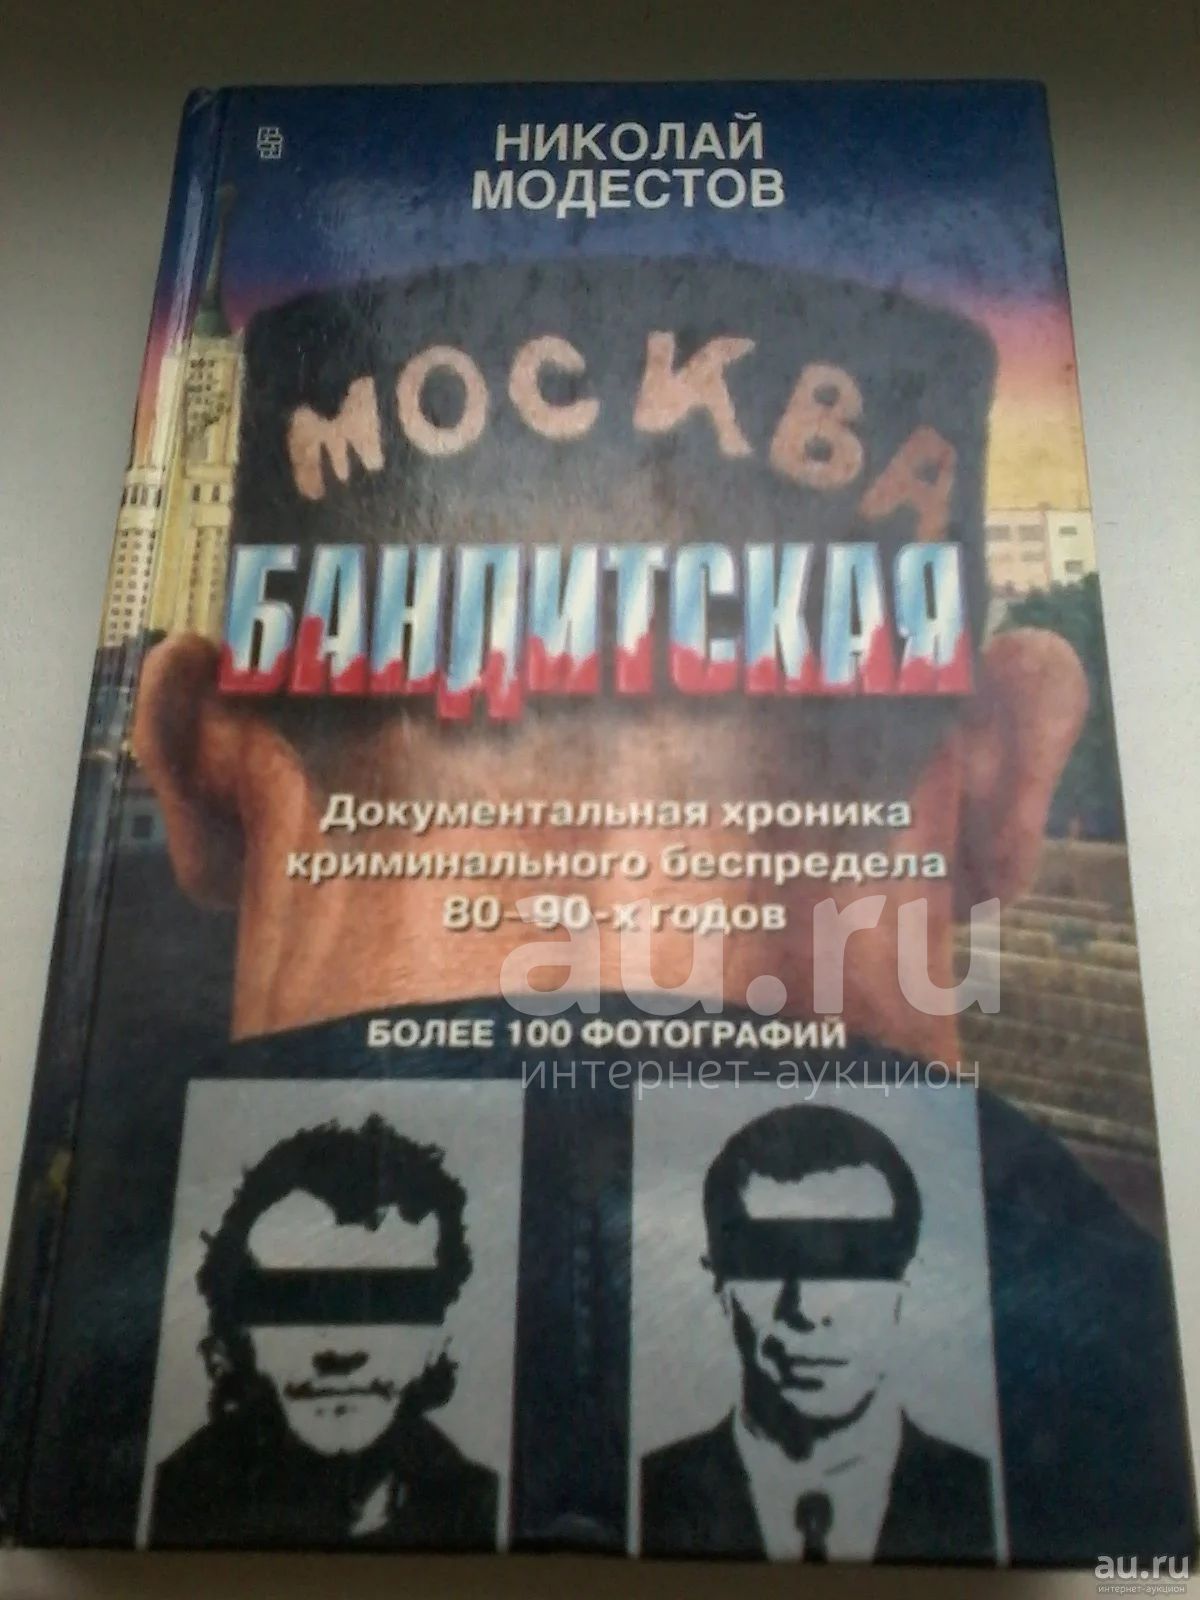 Бандит 1 читать. Москва бандитская книга. Москва бандитская 1-2 книга. Москва бандитская книга читать.